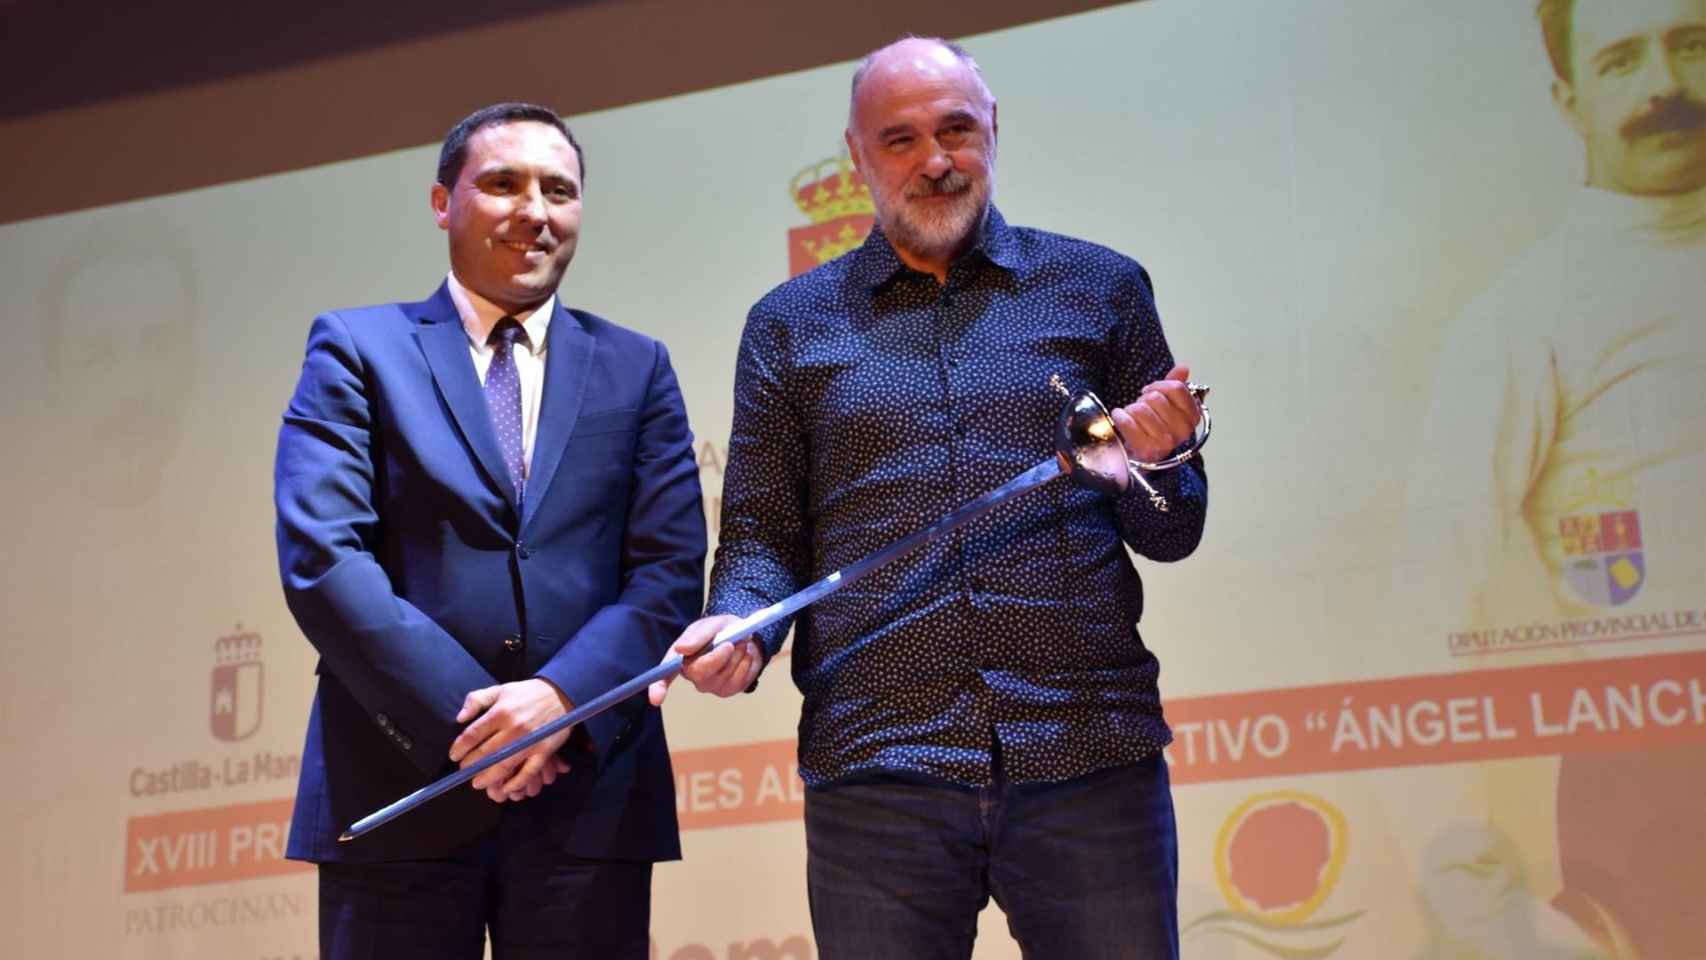 El exentrenador del Real Madrid de baloncesto, Pablo Laso, recibiendo la espada que lo acredita como distinguido en los XVIII Premios y Distinciones al Mérito Deportivo 'Ángel Lancho'.